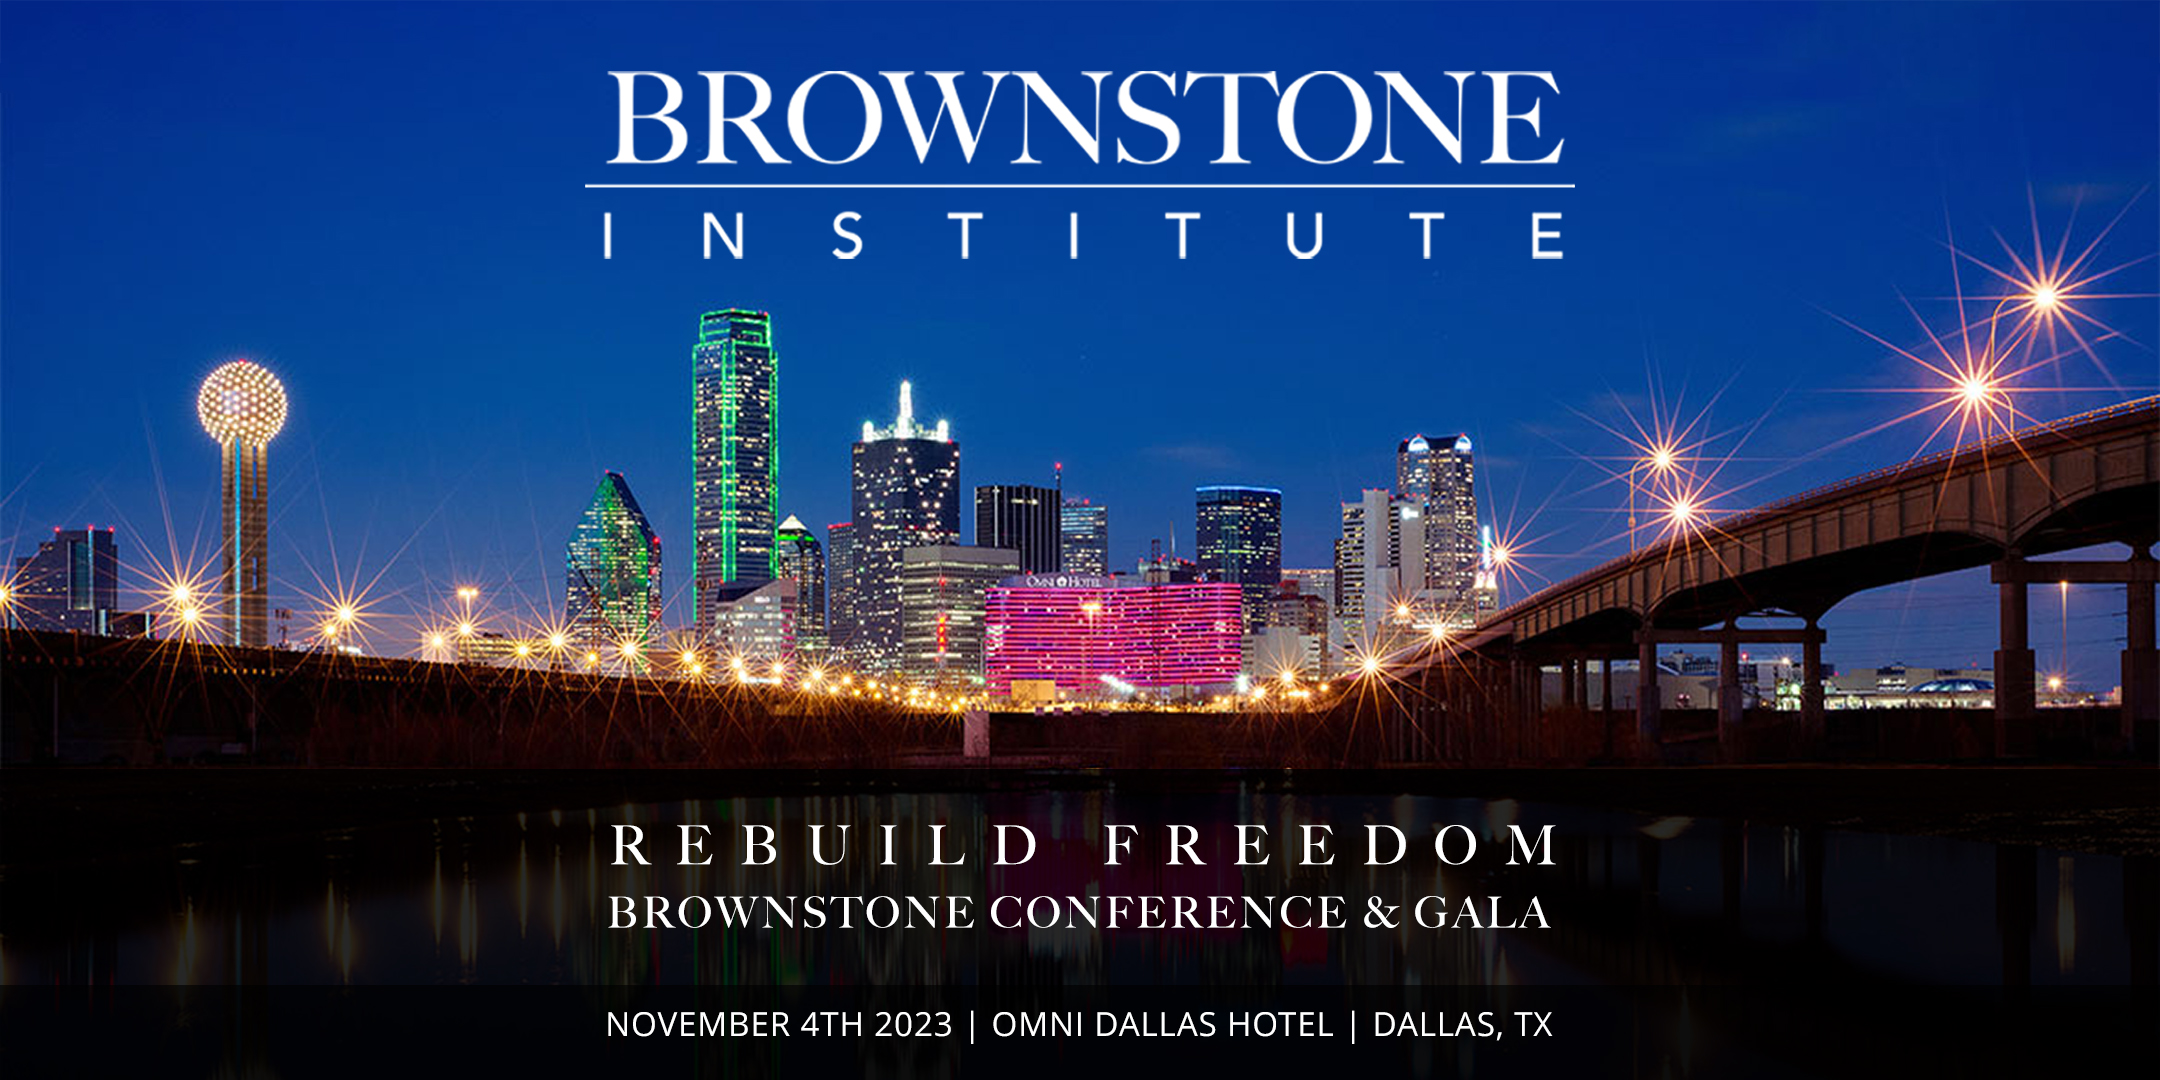 brownstone institute rebuild freedom